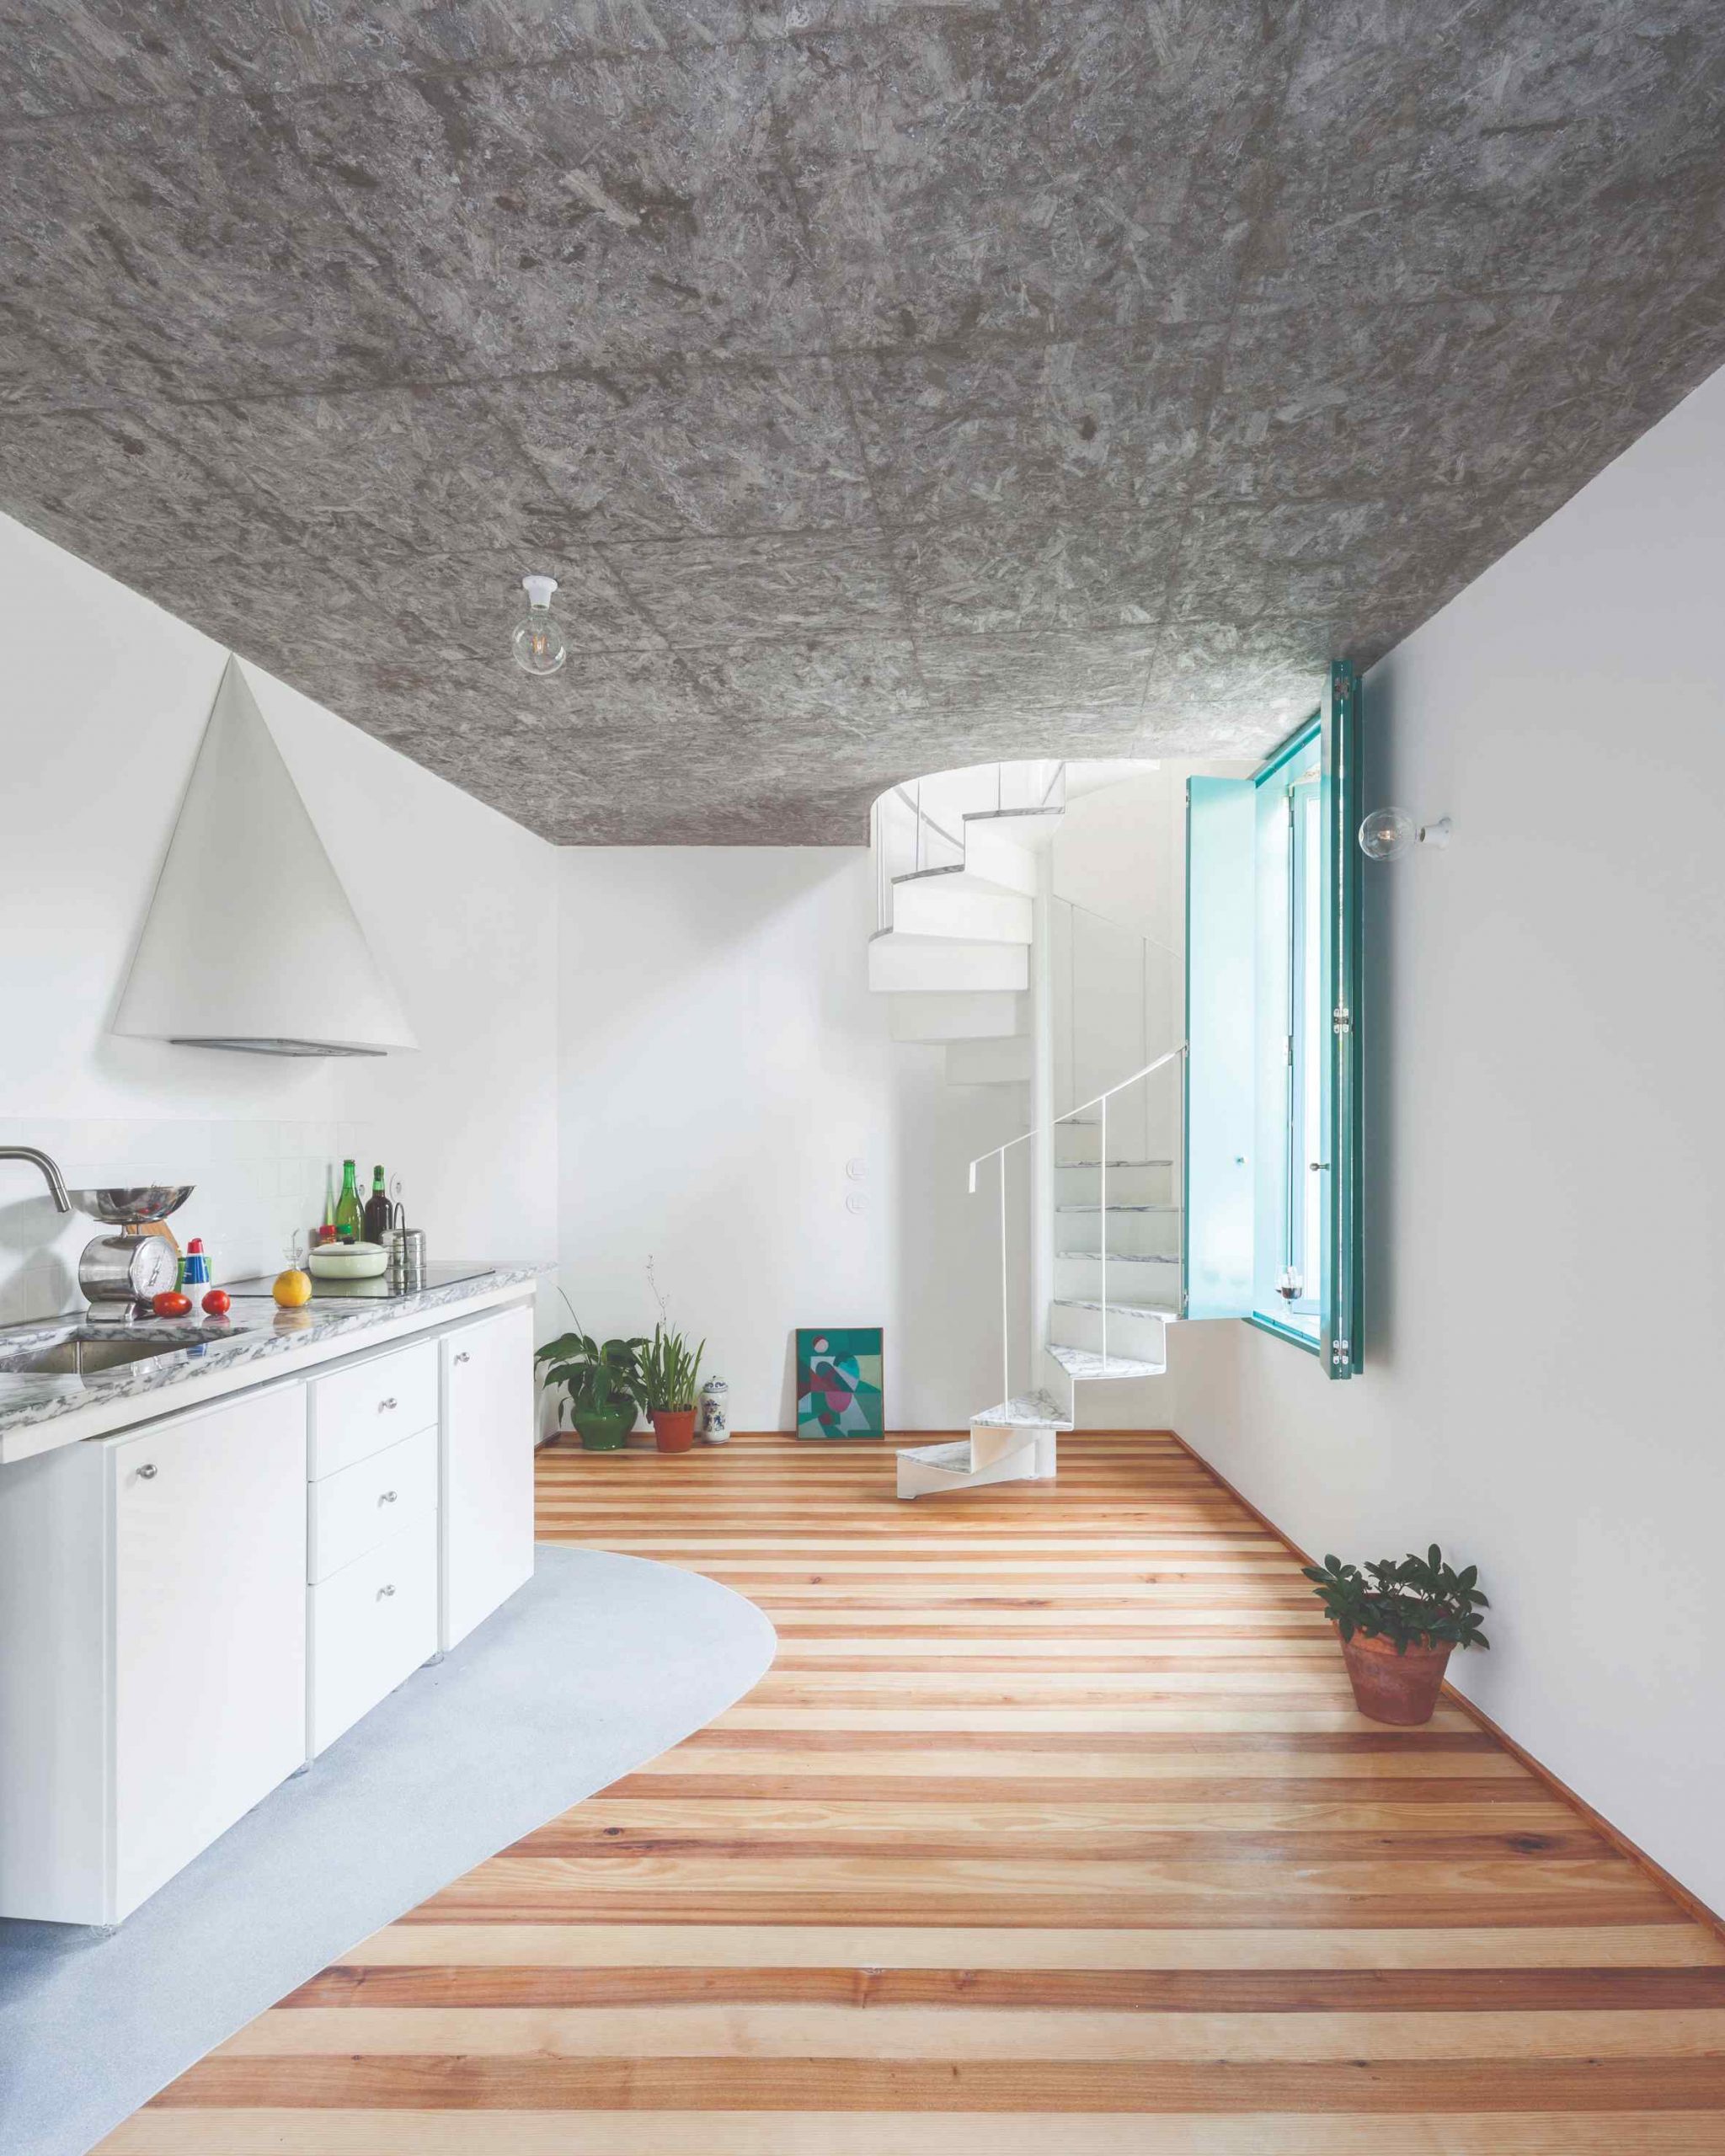 Kuchyňa s pruhovanou podlahou a s malým točitým schodiskom